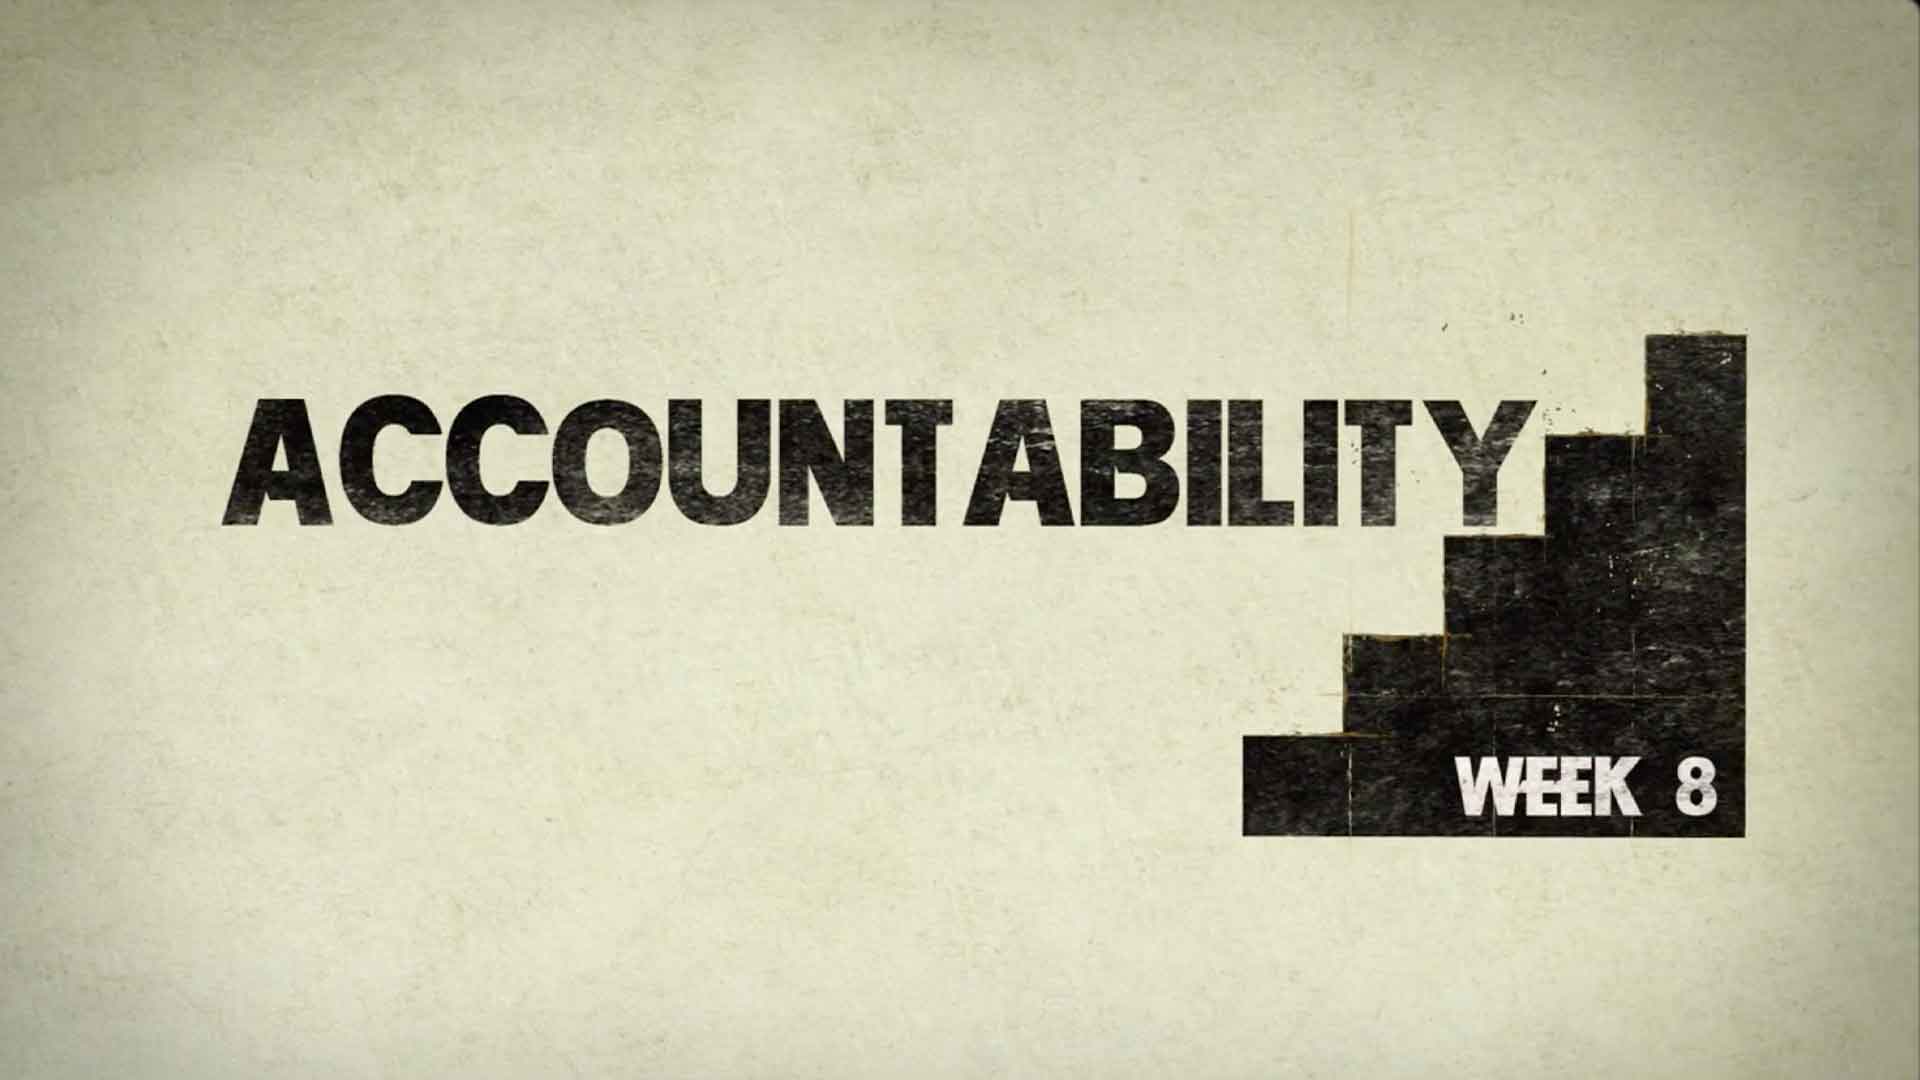 Accountability - Week 8